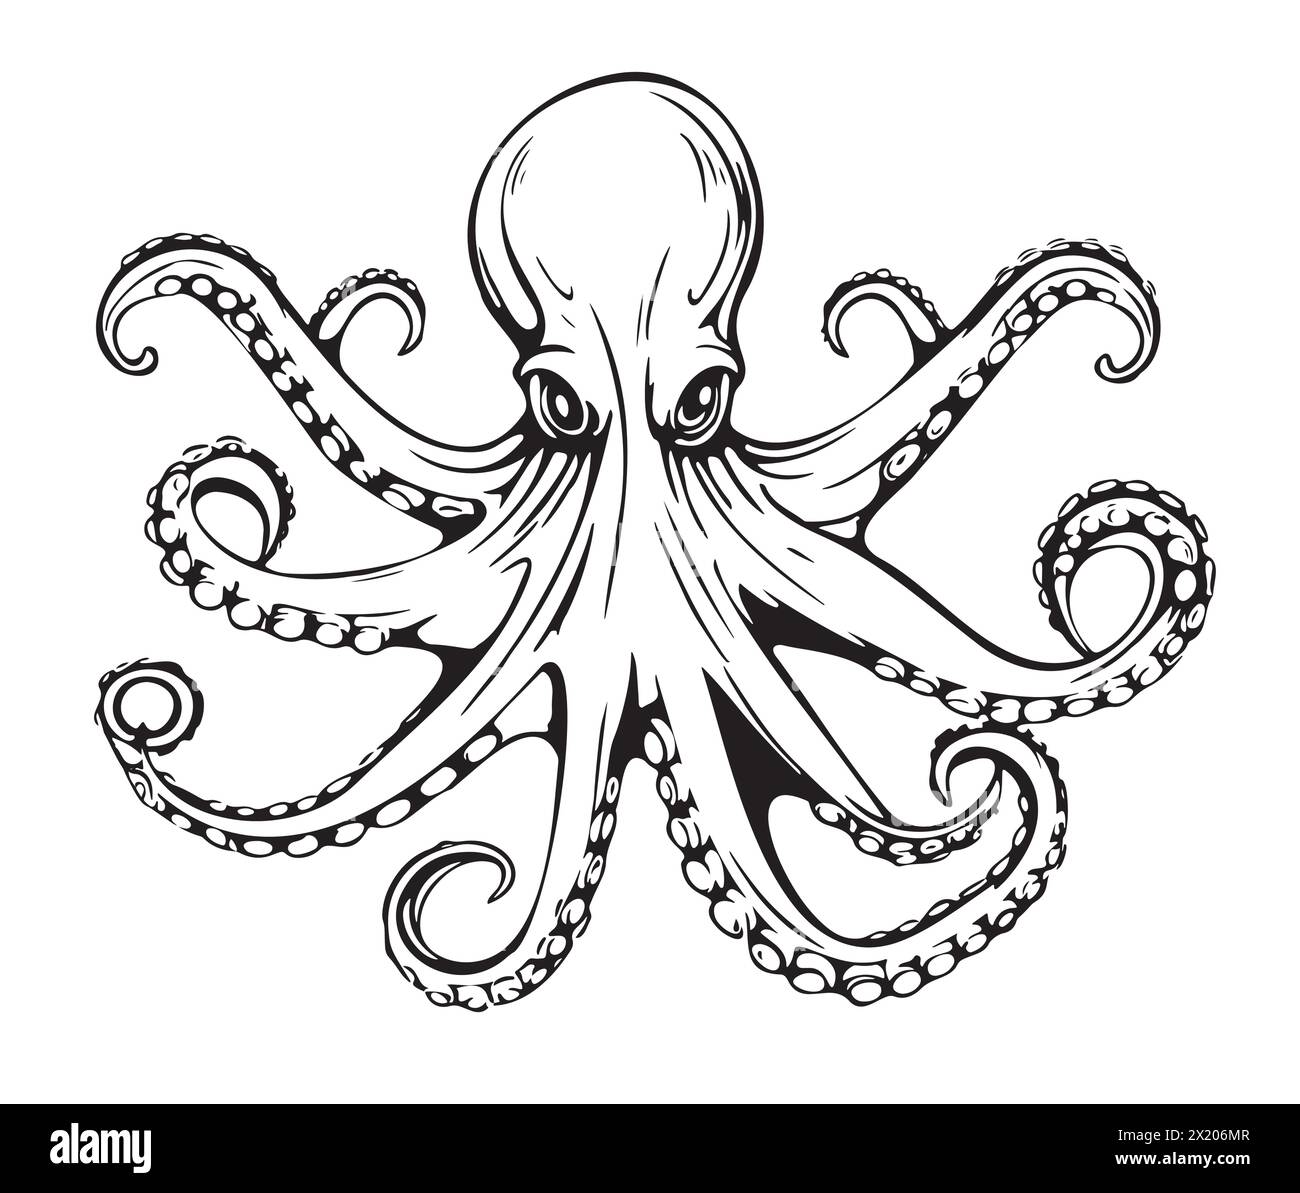 Un dessin détaillé en noir et blanc d'une pieuvre géante du Pacifique, un invertébré marin appartenant à la classe des céphalopodes. La mise en plan présente une symétrie complexe et une composition circulaire Illustration de Vecteur